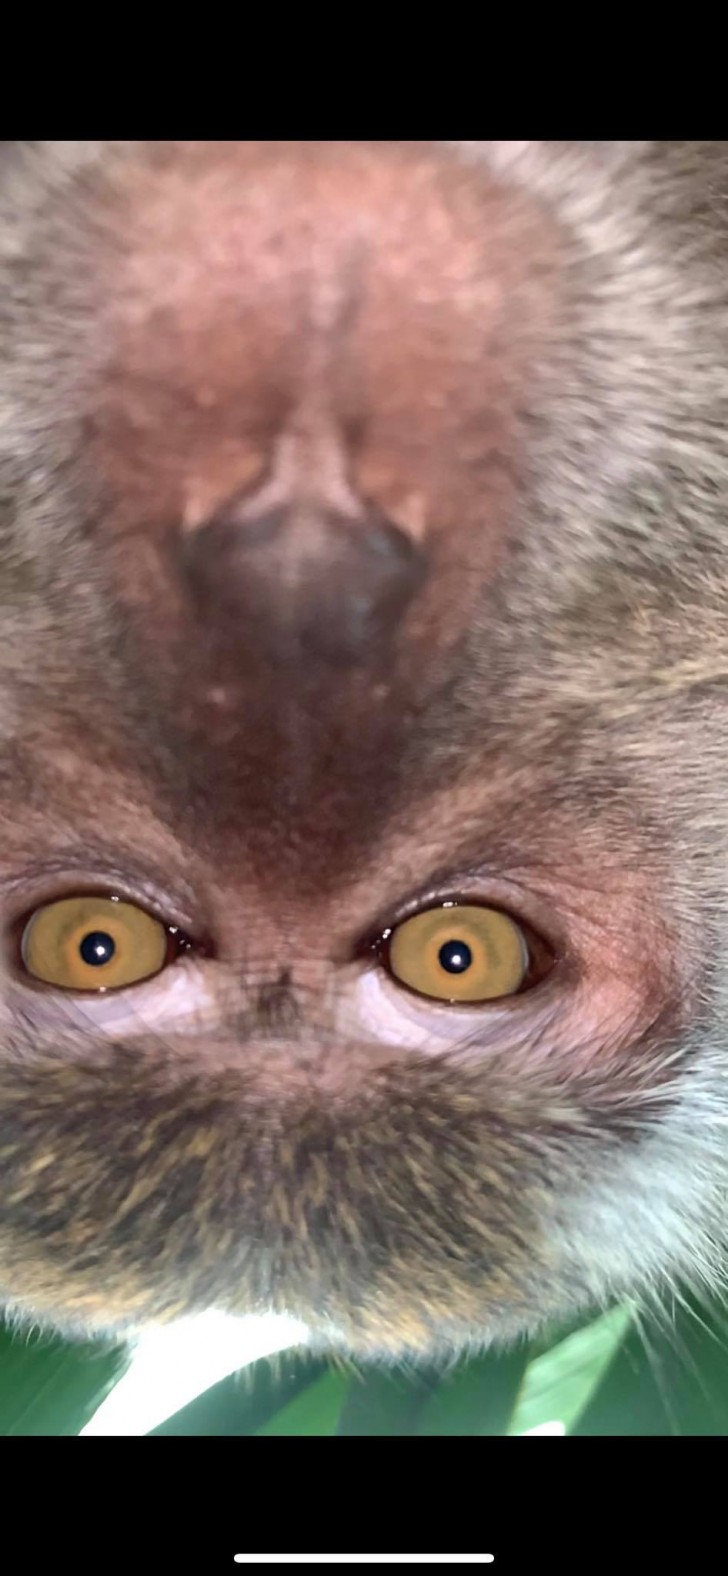 Haben die Affen herausgefunden, wie man Bilder macht?